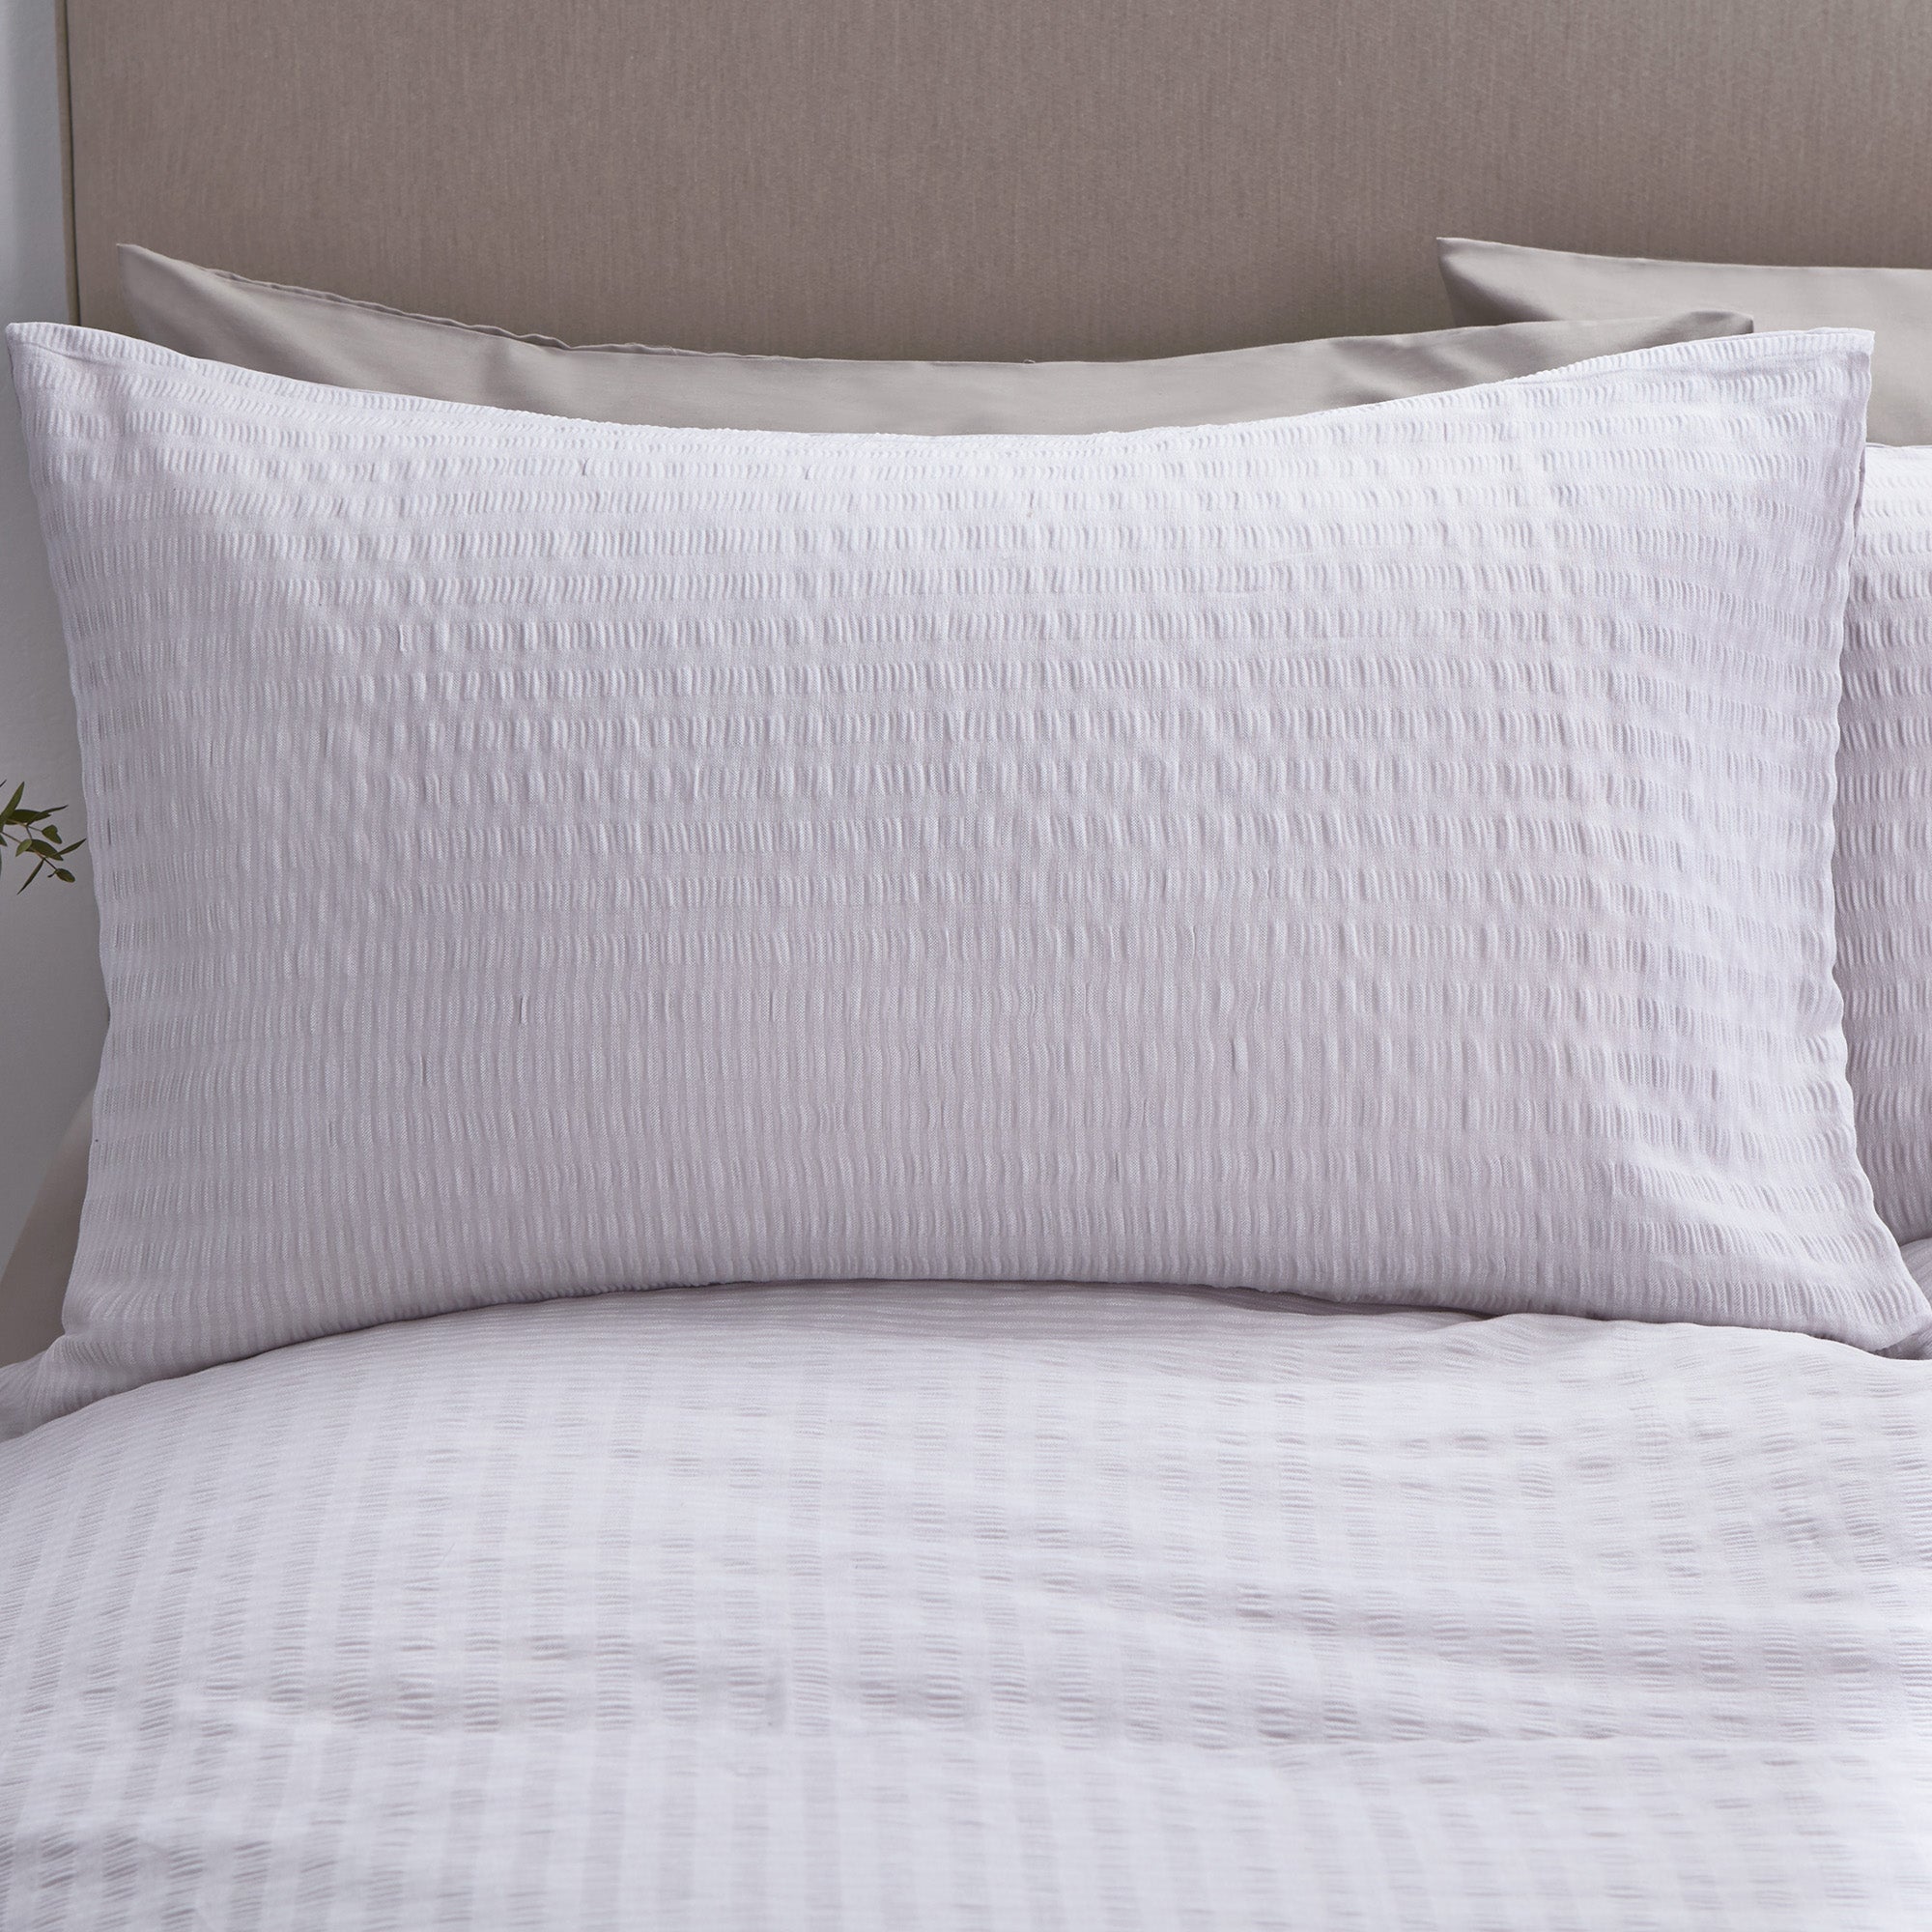 Logan Seersucker Grey Bed Linen Collection | Dunelm